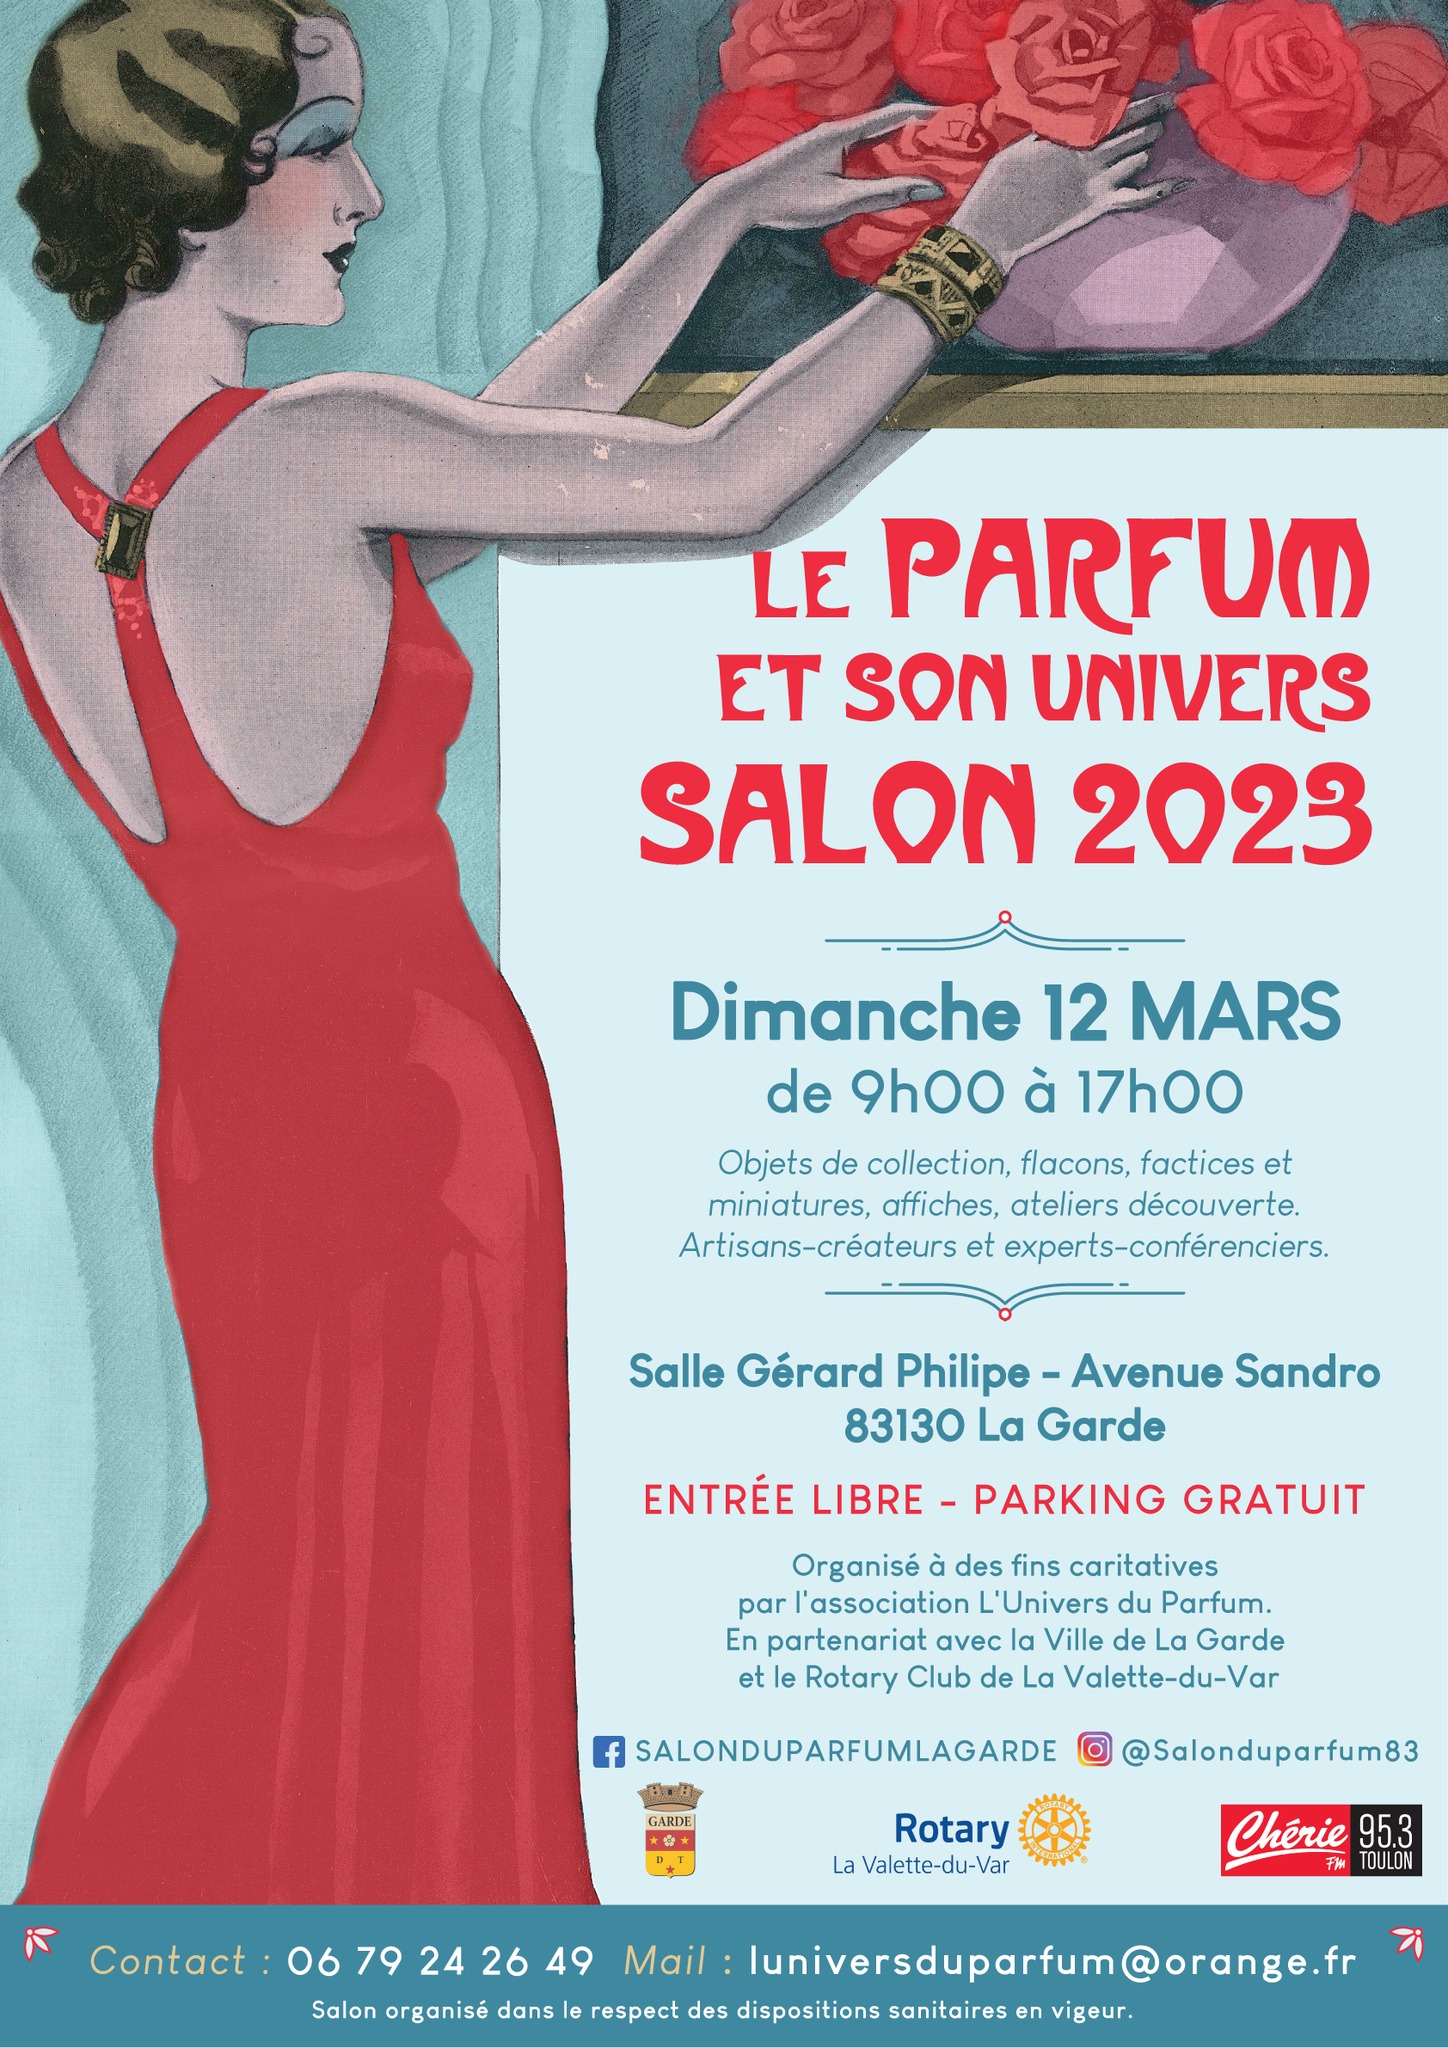 SALON DU PARFUM 2023 A LA GARDE dans ACCUEIL Salon-du-parfum